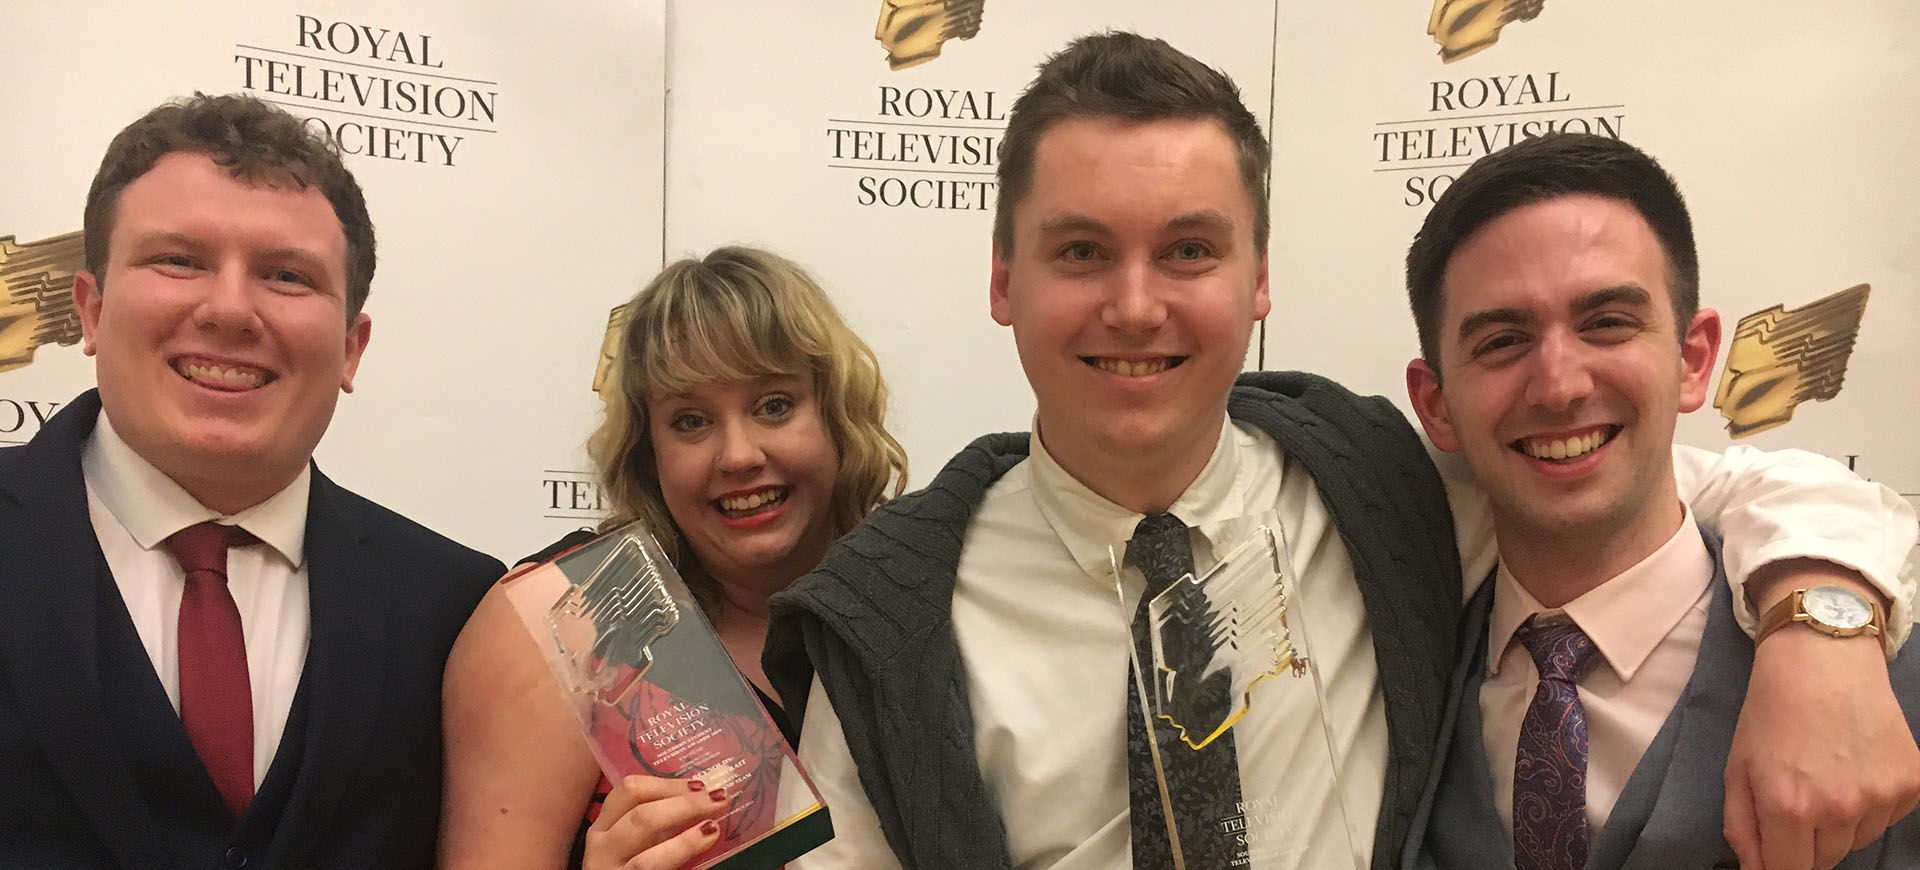 Students at the Royal Television Society (RTS) awards